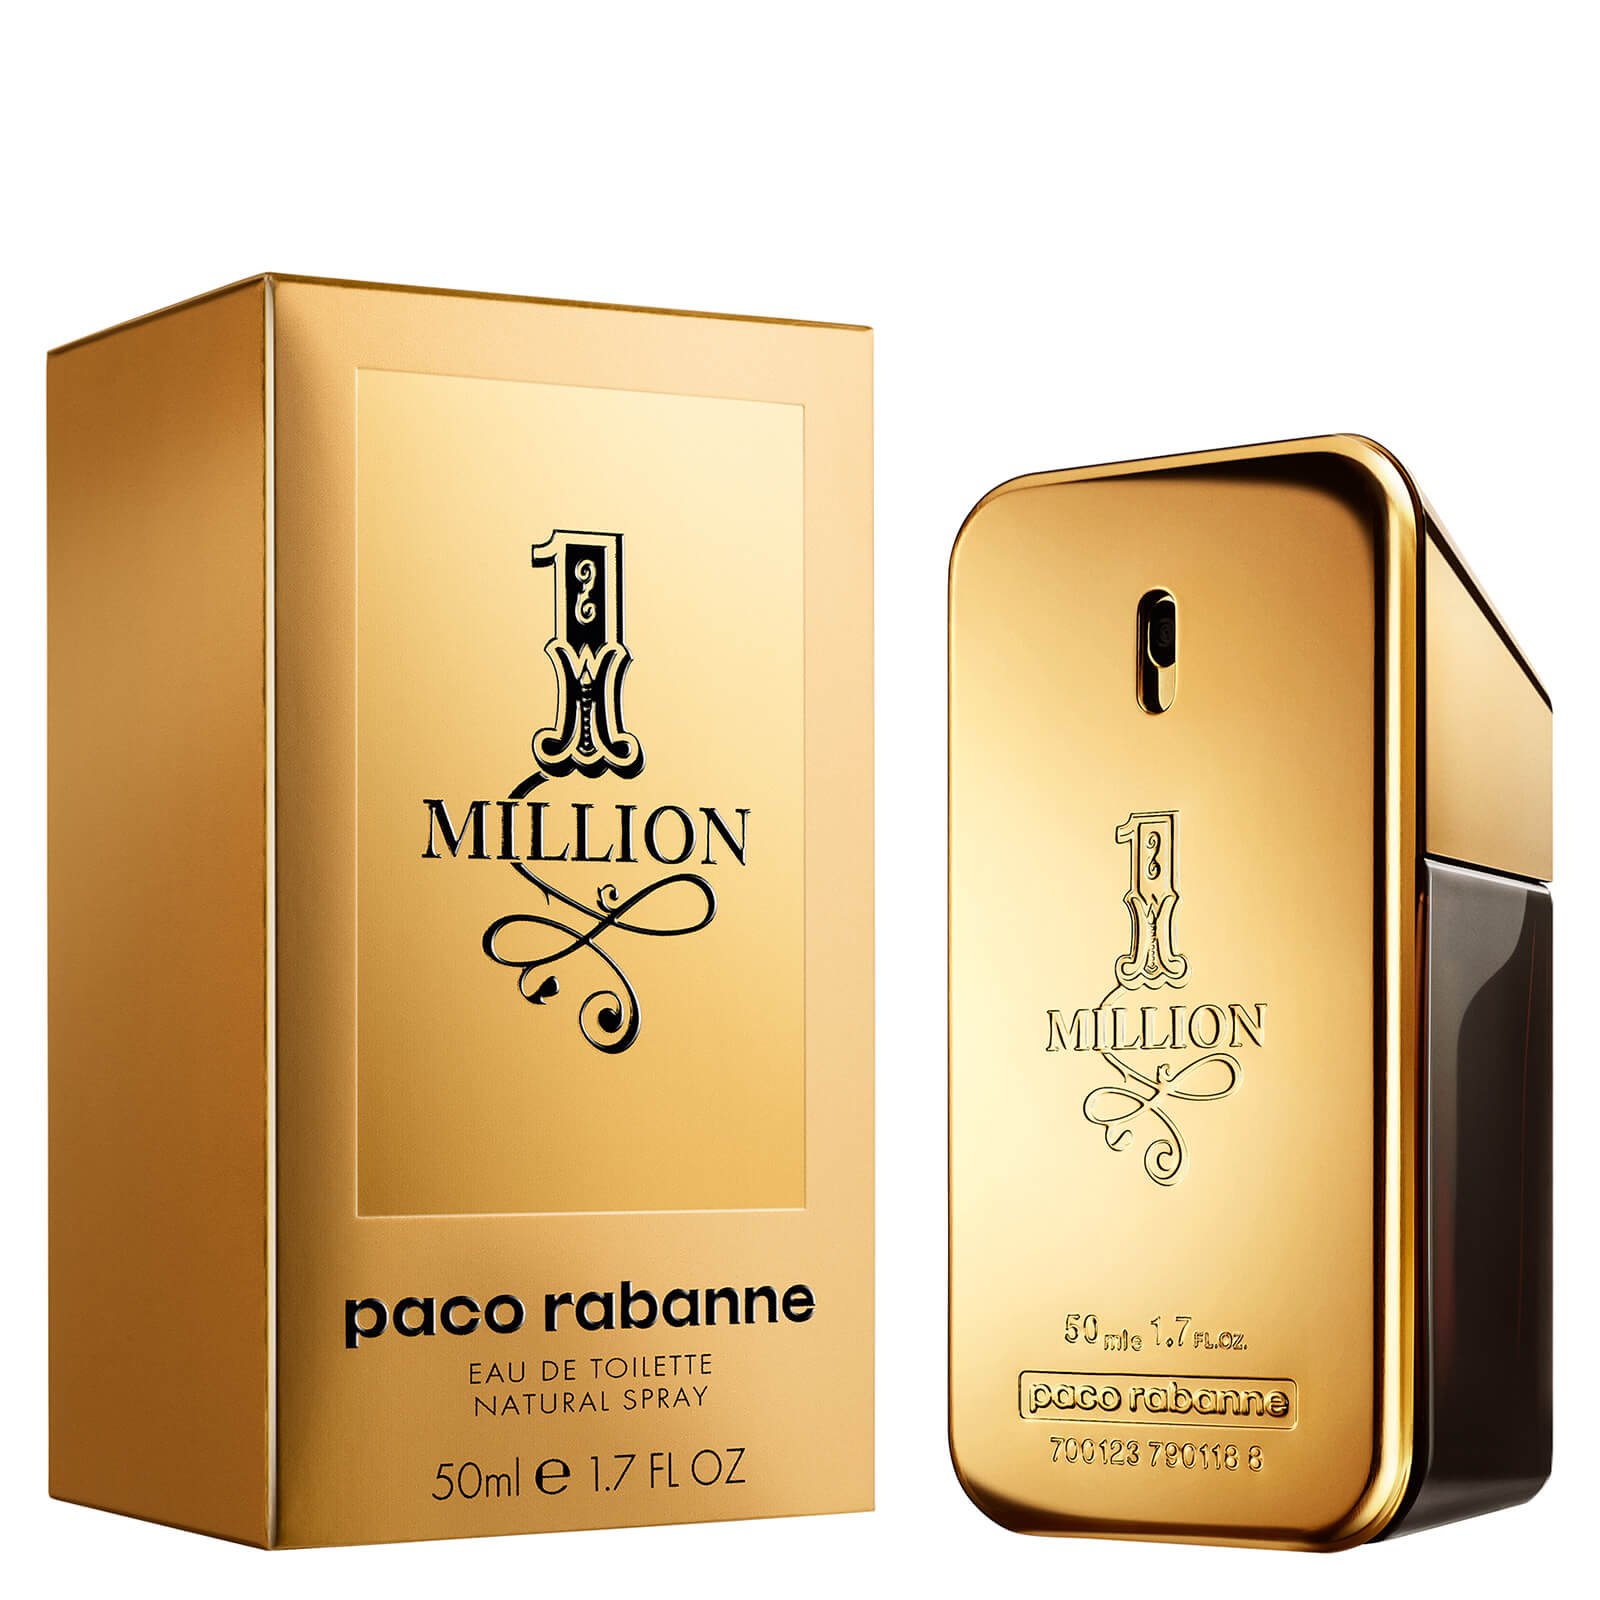 Planet Perfume - Paco Rabanne 1 Million : Super Deals